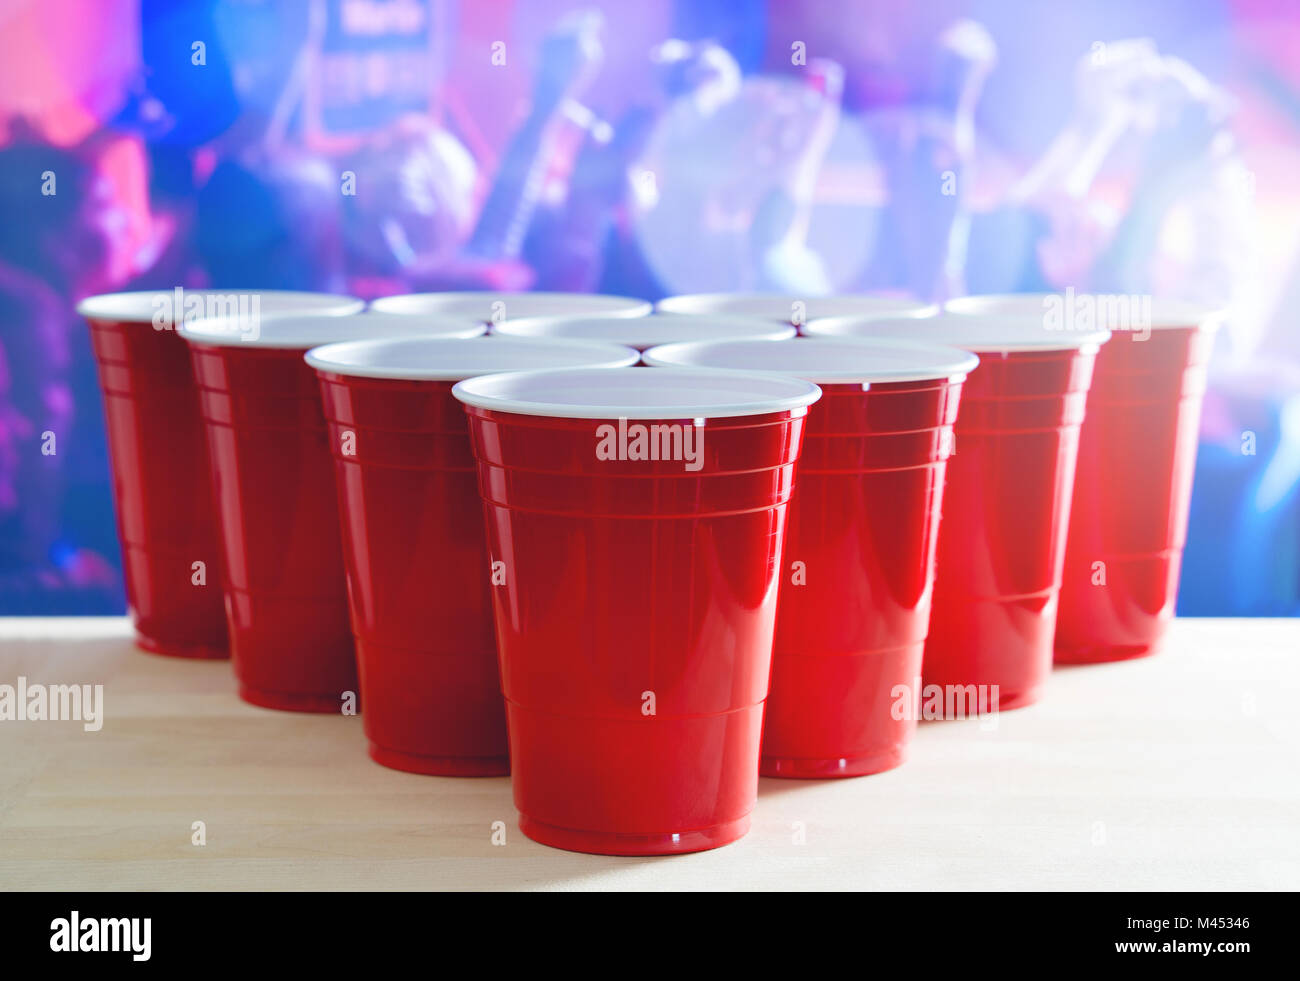 Bier pong Turnier Layout. Viele rote party Becher in einem Nachtclub voller Menschen tanzen auf der Tanzfläche im Hintergrund. Perfekt für Marketing. Stockfoto